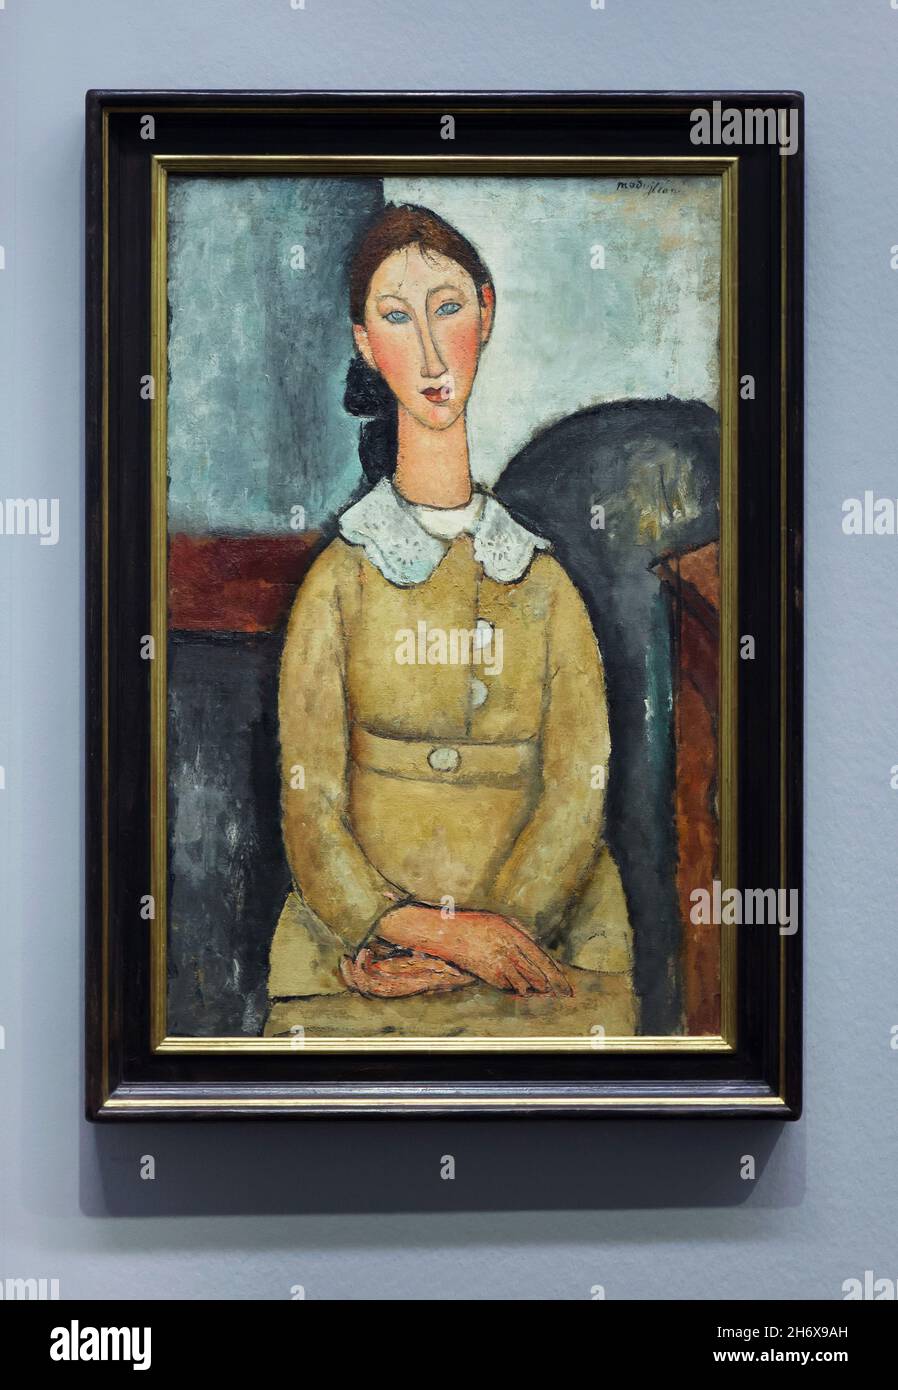 Gemälde 'Girl in a Yellow Dress' des italienischen modernistischen Malers Amedeo Modigliani (1917), ausgestellt in seiner Retrospektive in der Albertina in Wien. Die Ausstellung zum 100. Todestag des Künstlers läuft bis zum 9. Januar 2022. Stockfoto